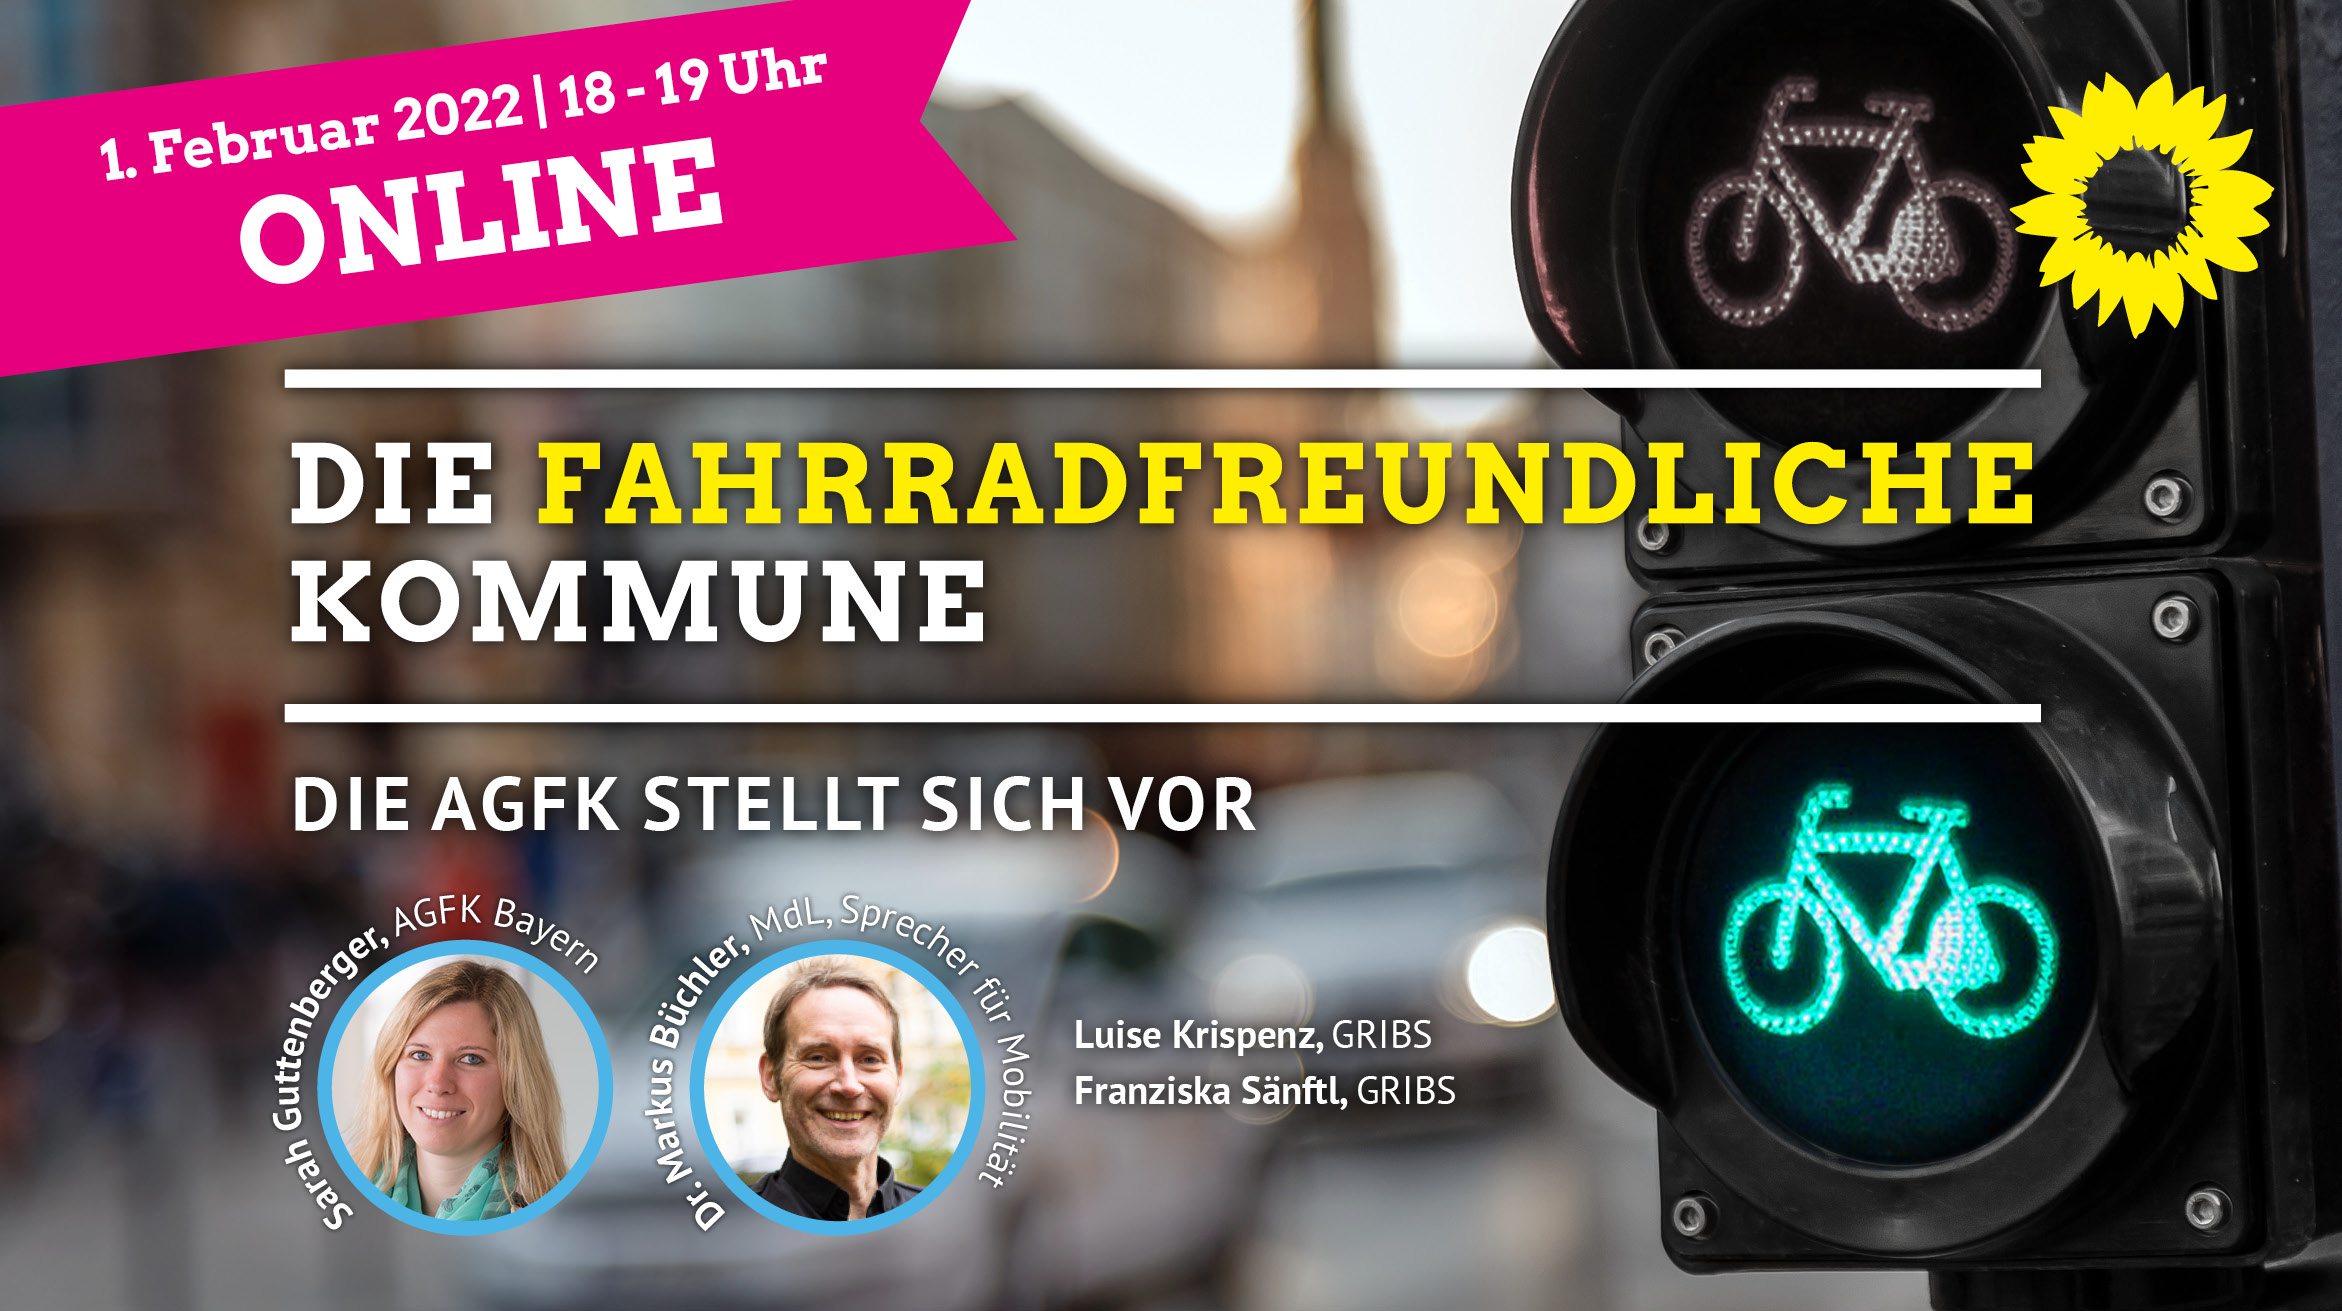 Einladungsgrafik zeigt den Veranstaltungstitel "Die fahrradfreundliche Kommune" und Referent*innen-Portraits vor unscharfem Hintergrund und einer grün leuchtenden Fahrradampel.